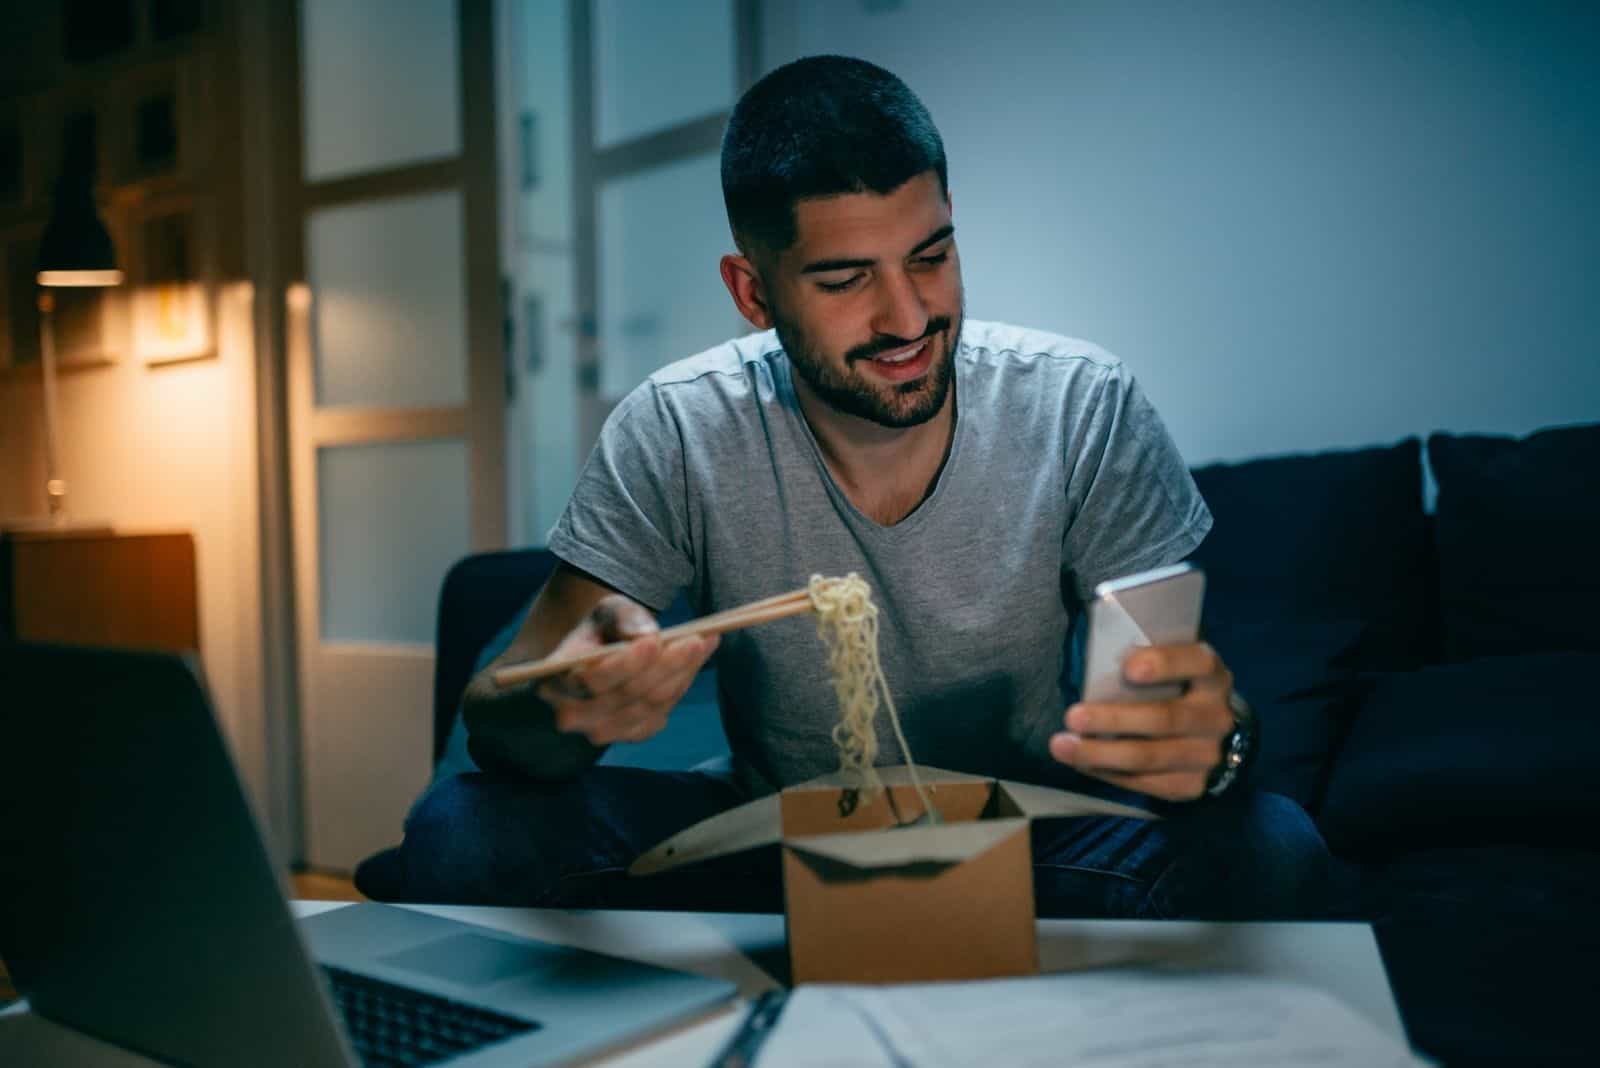 Mann isst chinesisches Essen nachts arbeiten, während er lächelnd auf sein Handy schaut